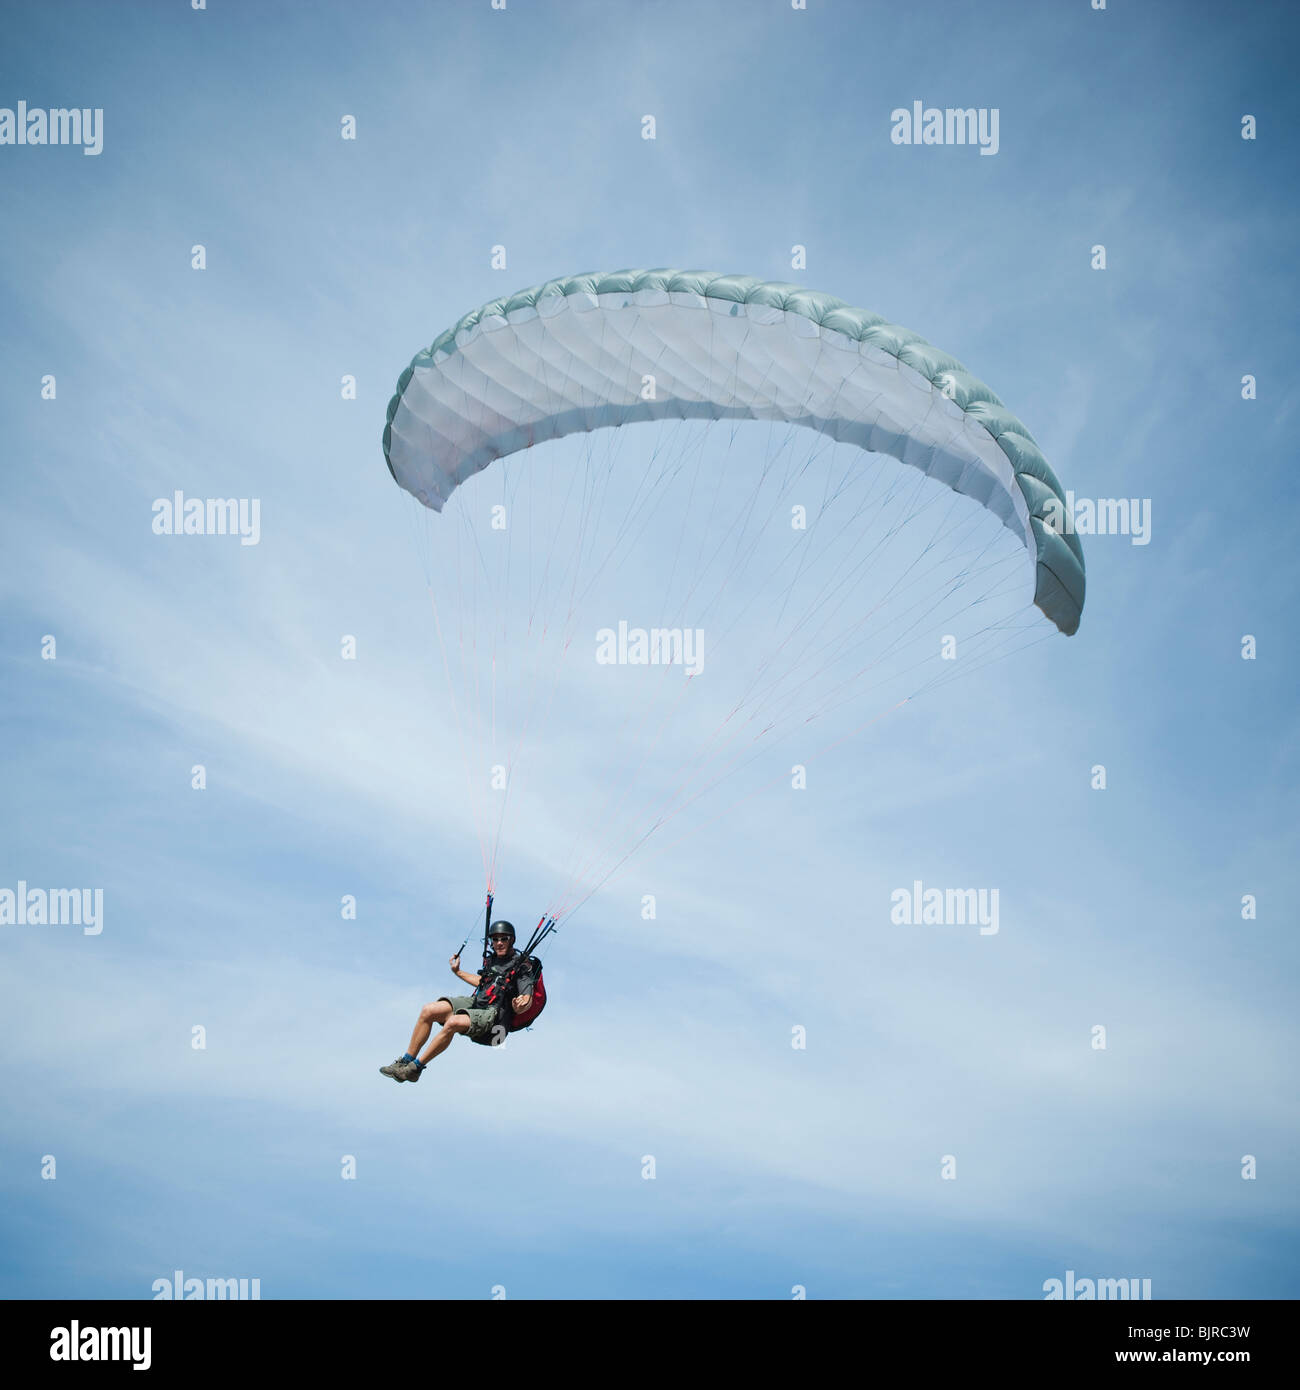 USA, Utah, Lehi, man paragliding Stock Photo